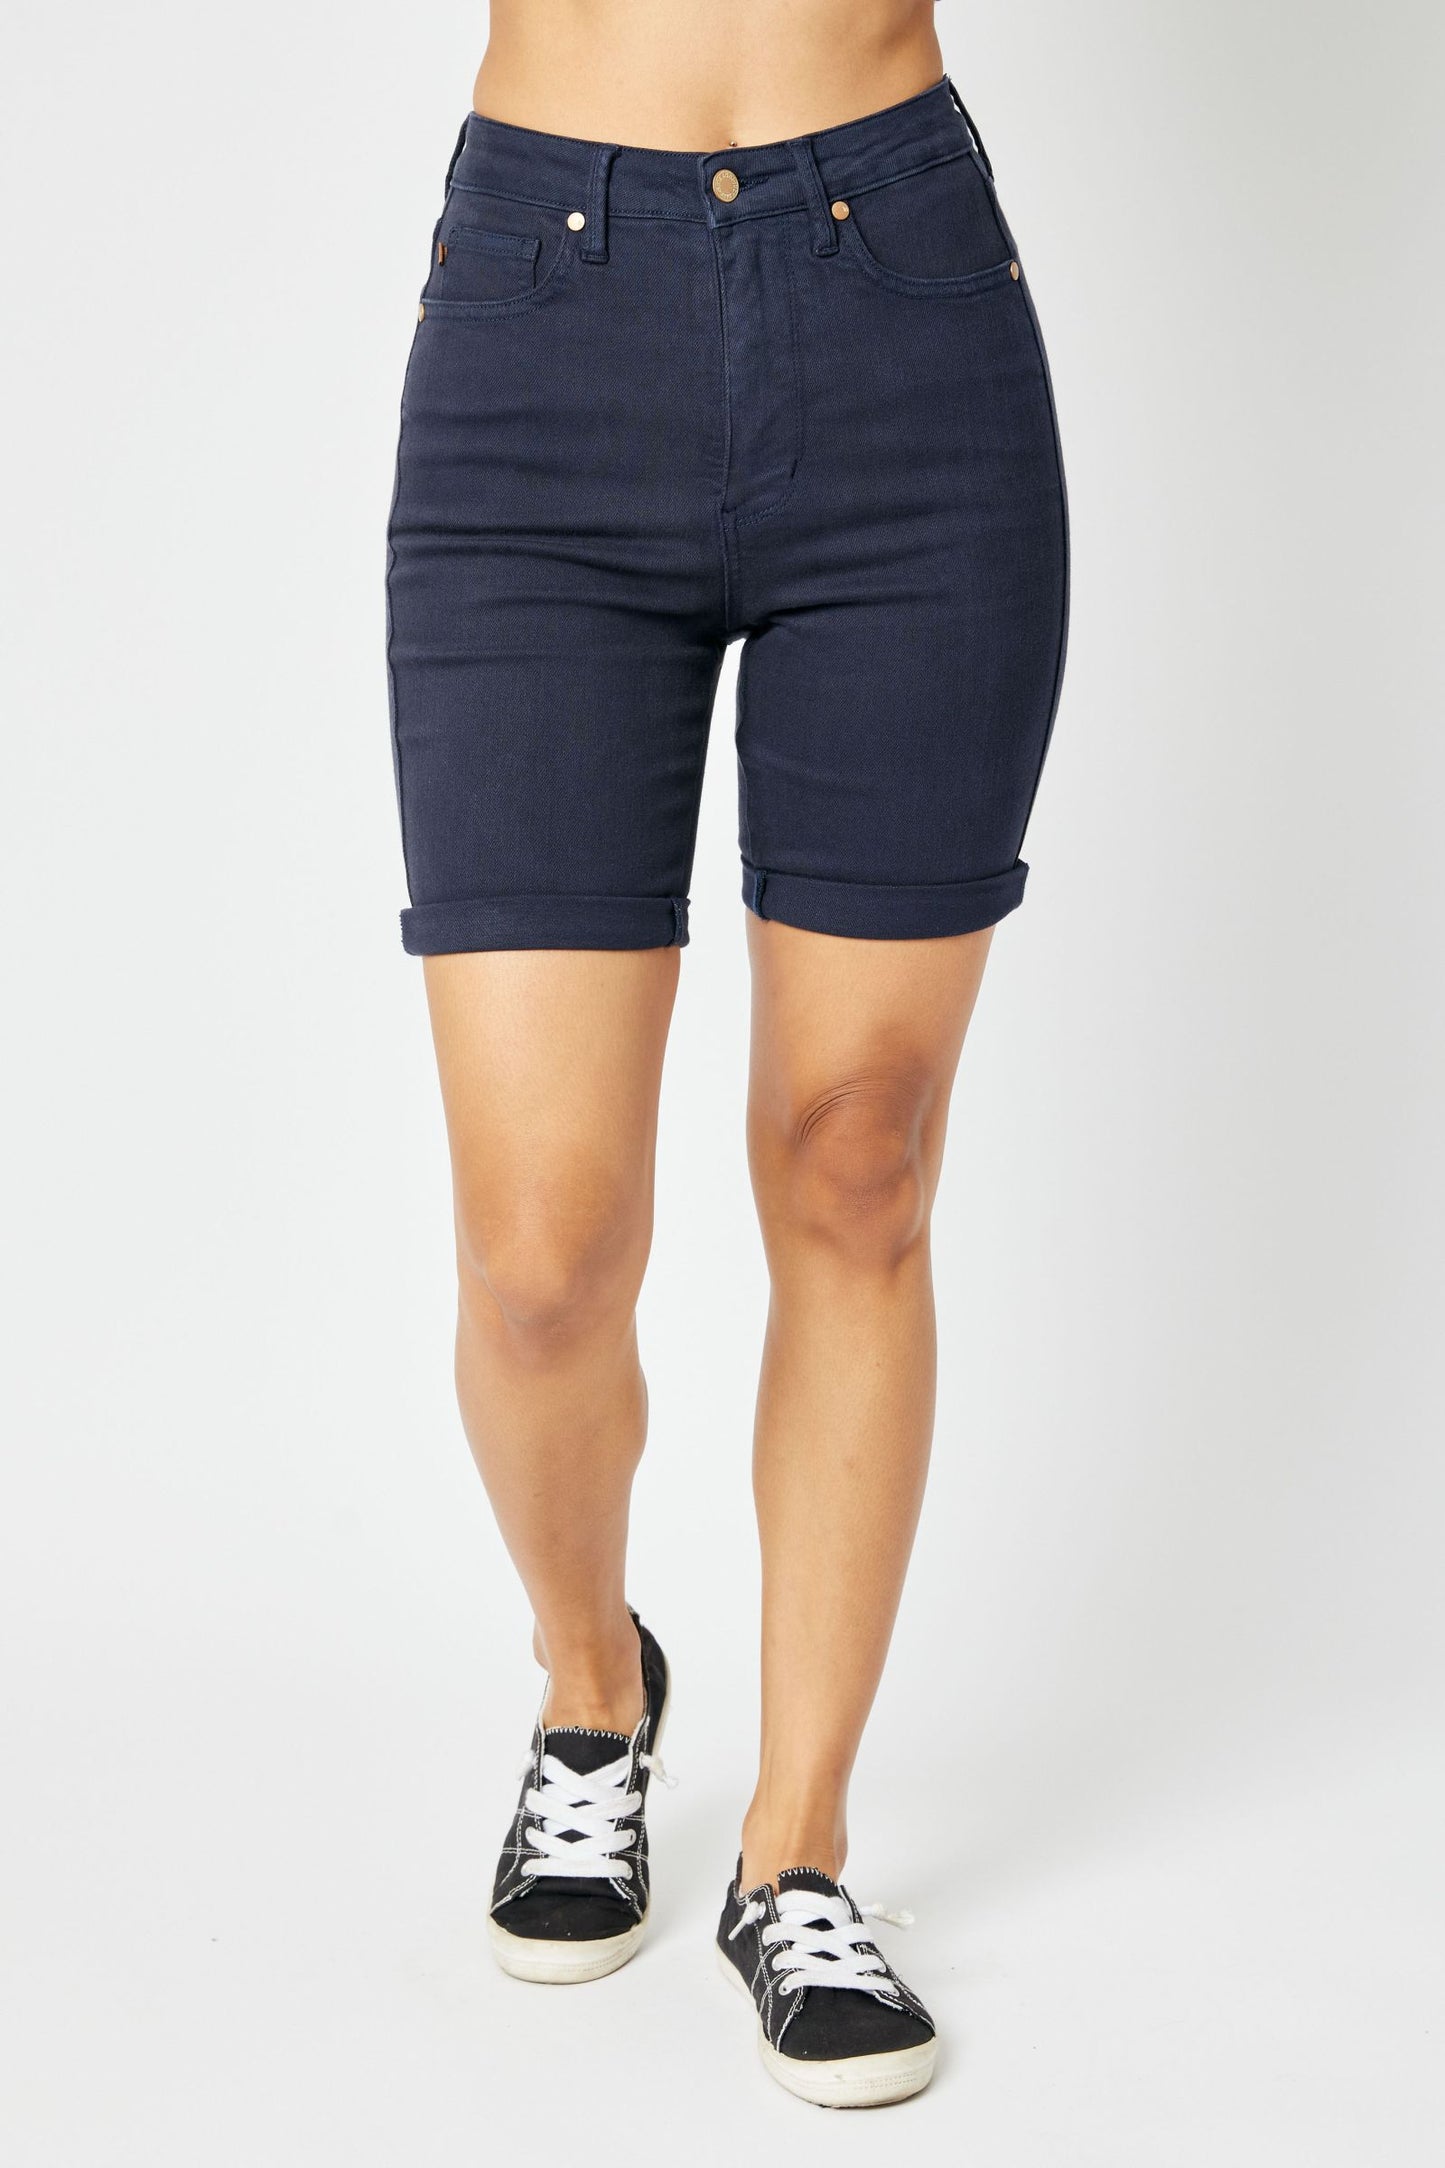 Judy Blue High Waist Navy Garment Dyed Bermuda Shorts